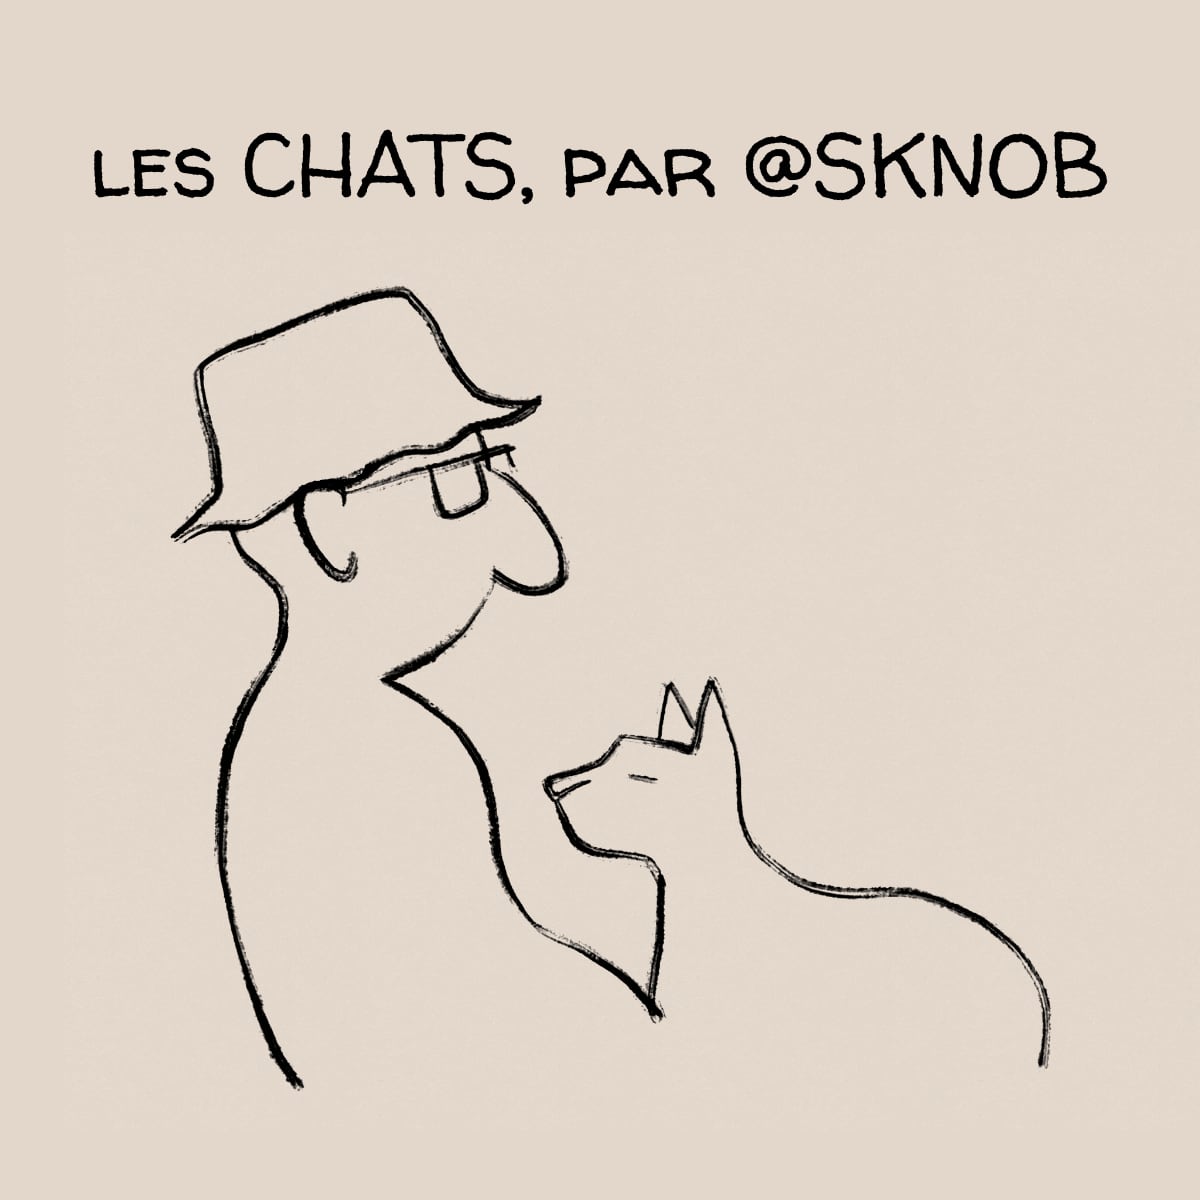 Les CHATS, par @SKNOB